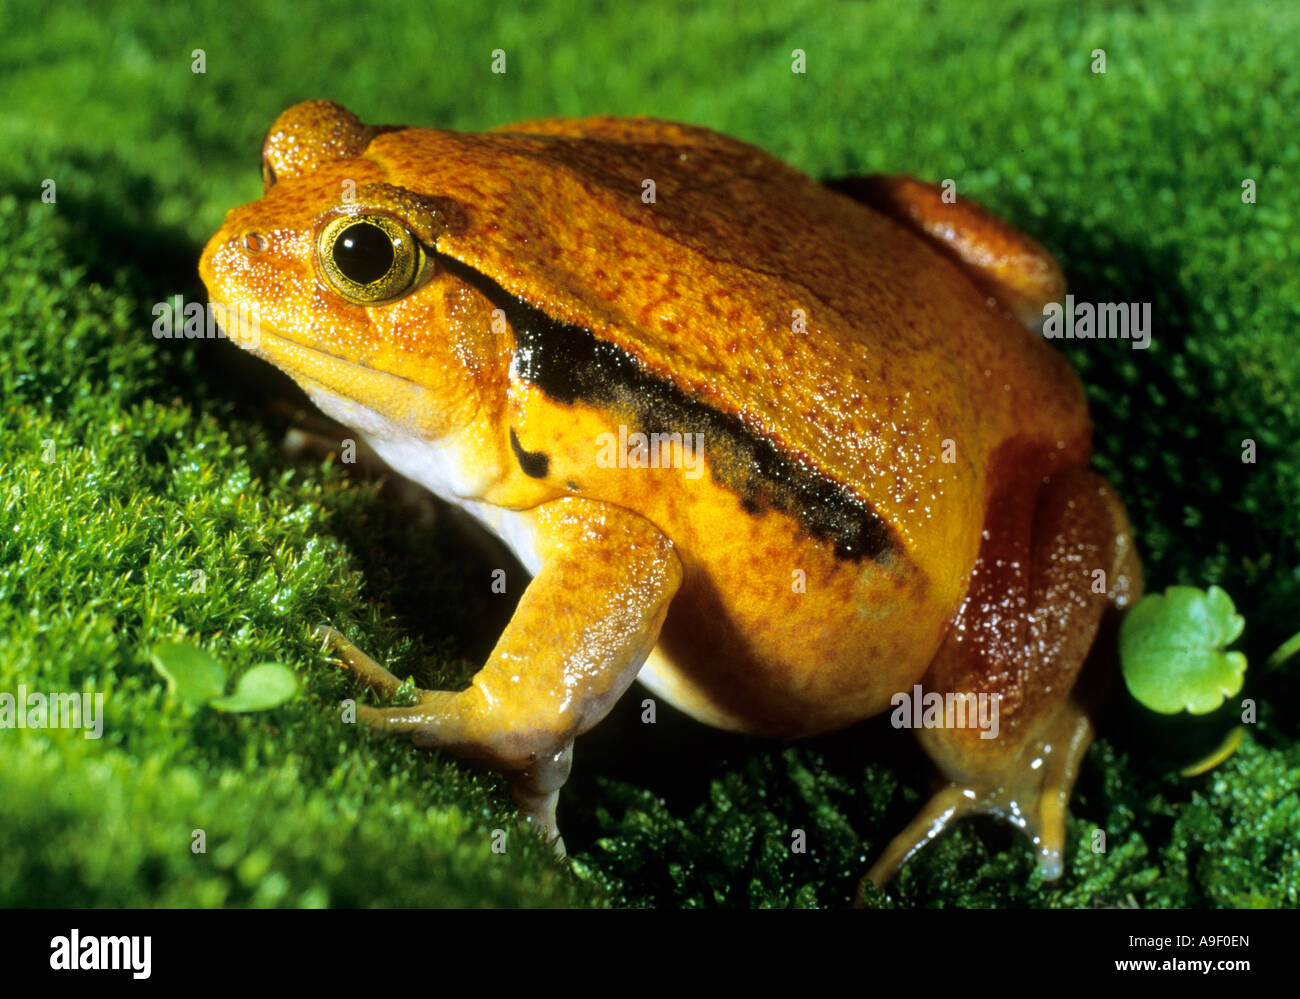 False Tomato Frog (Dyscophus guineti) Stock Photo